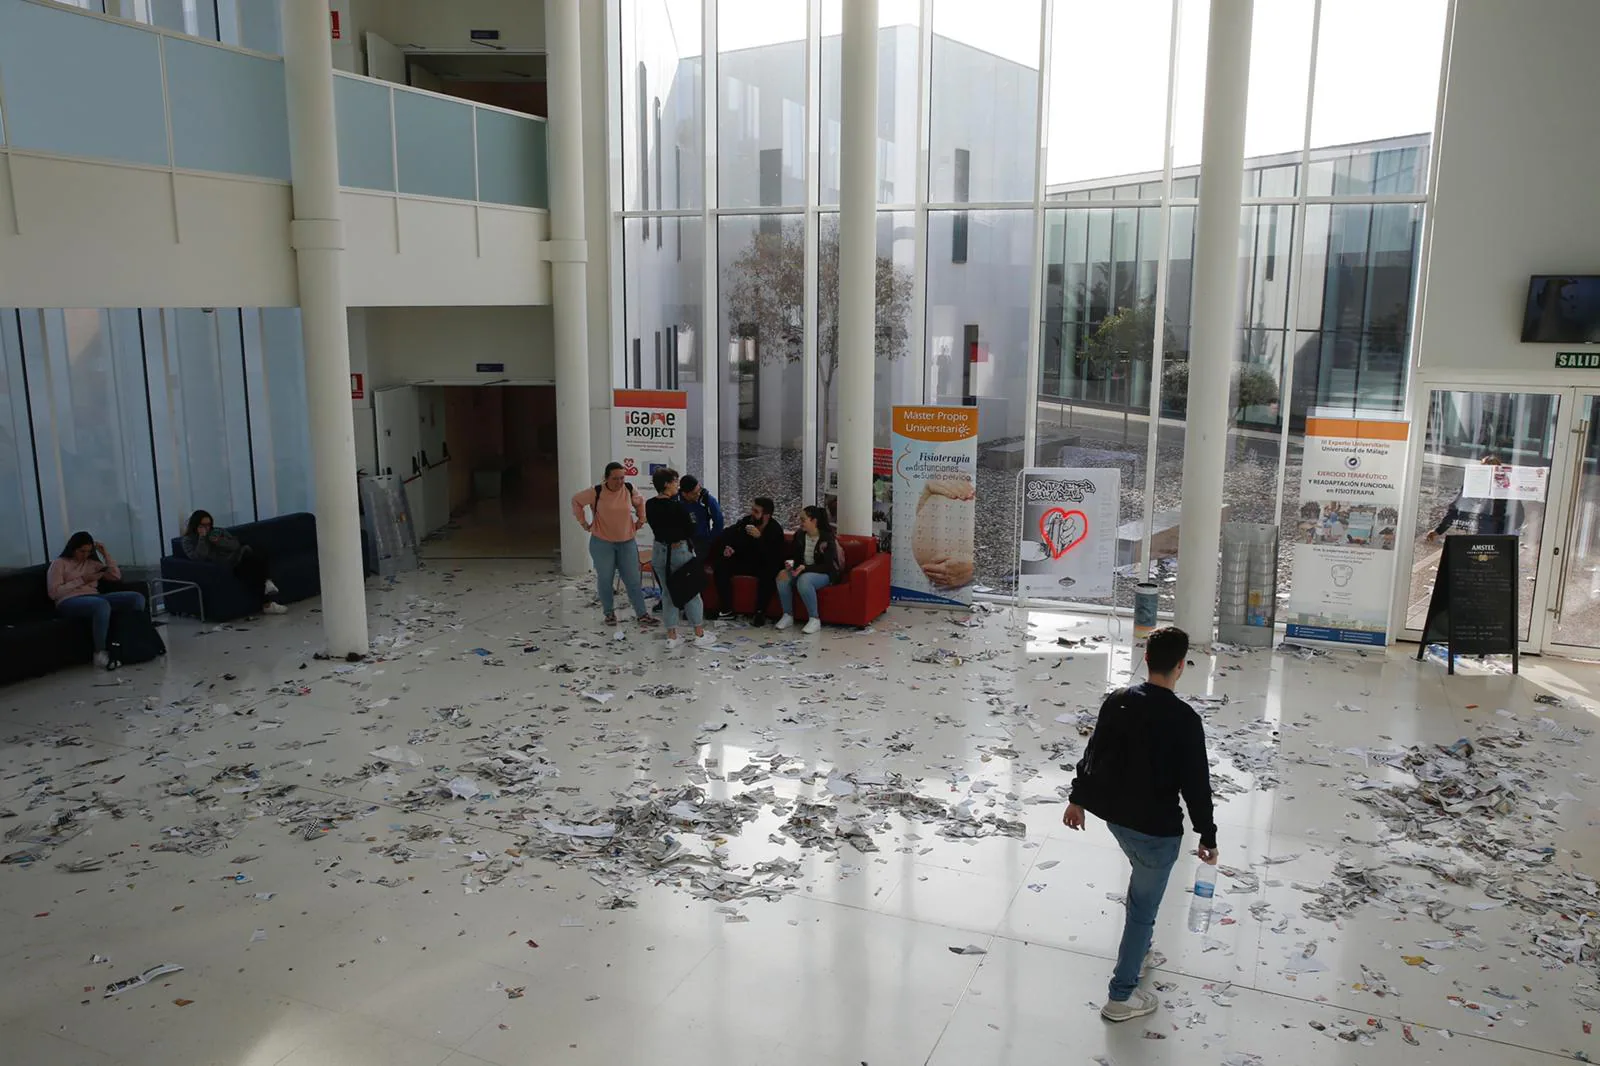 Basura acumulada en aulas y pasillos en el segundo día de huelga de limpieza de la UMA.